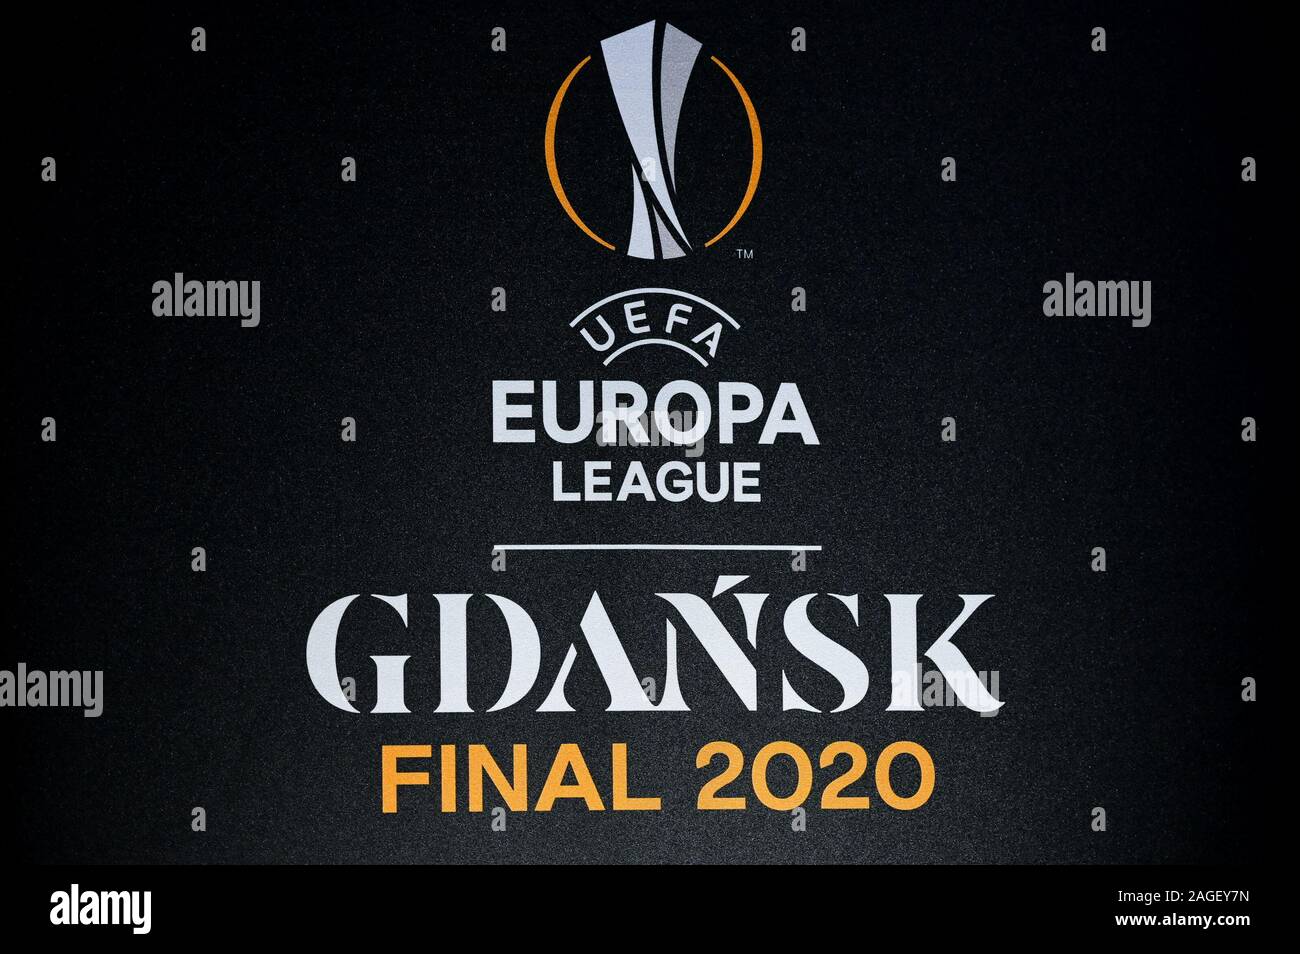 Danzig, Polen. 18 Dez, 2019. UEFA Europa League Finale 2020 Danzig logo.  Die 2020 UEFA Europa League Finale im Finale der UEFA Europa League 2019-20,  die 49. Saison der Europäischen sekundären Verein